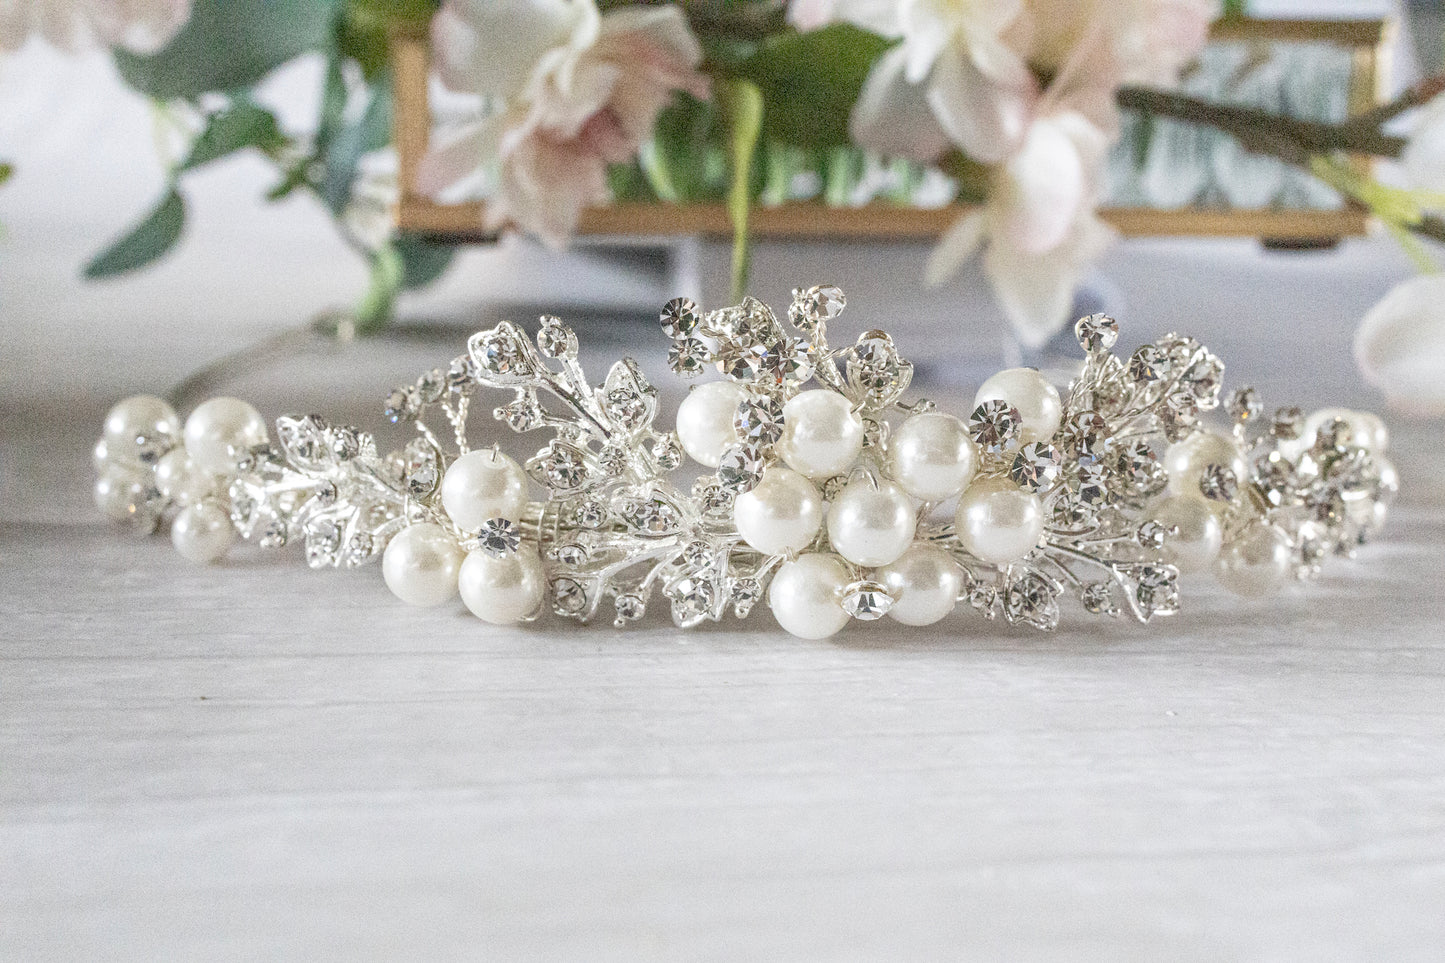 Silver Bridal Tiara, Wedding hair Accessories, Pearl Bridal Tiara, wedding hairpiece, wedding Tiara, hair accessories,